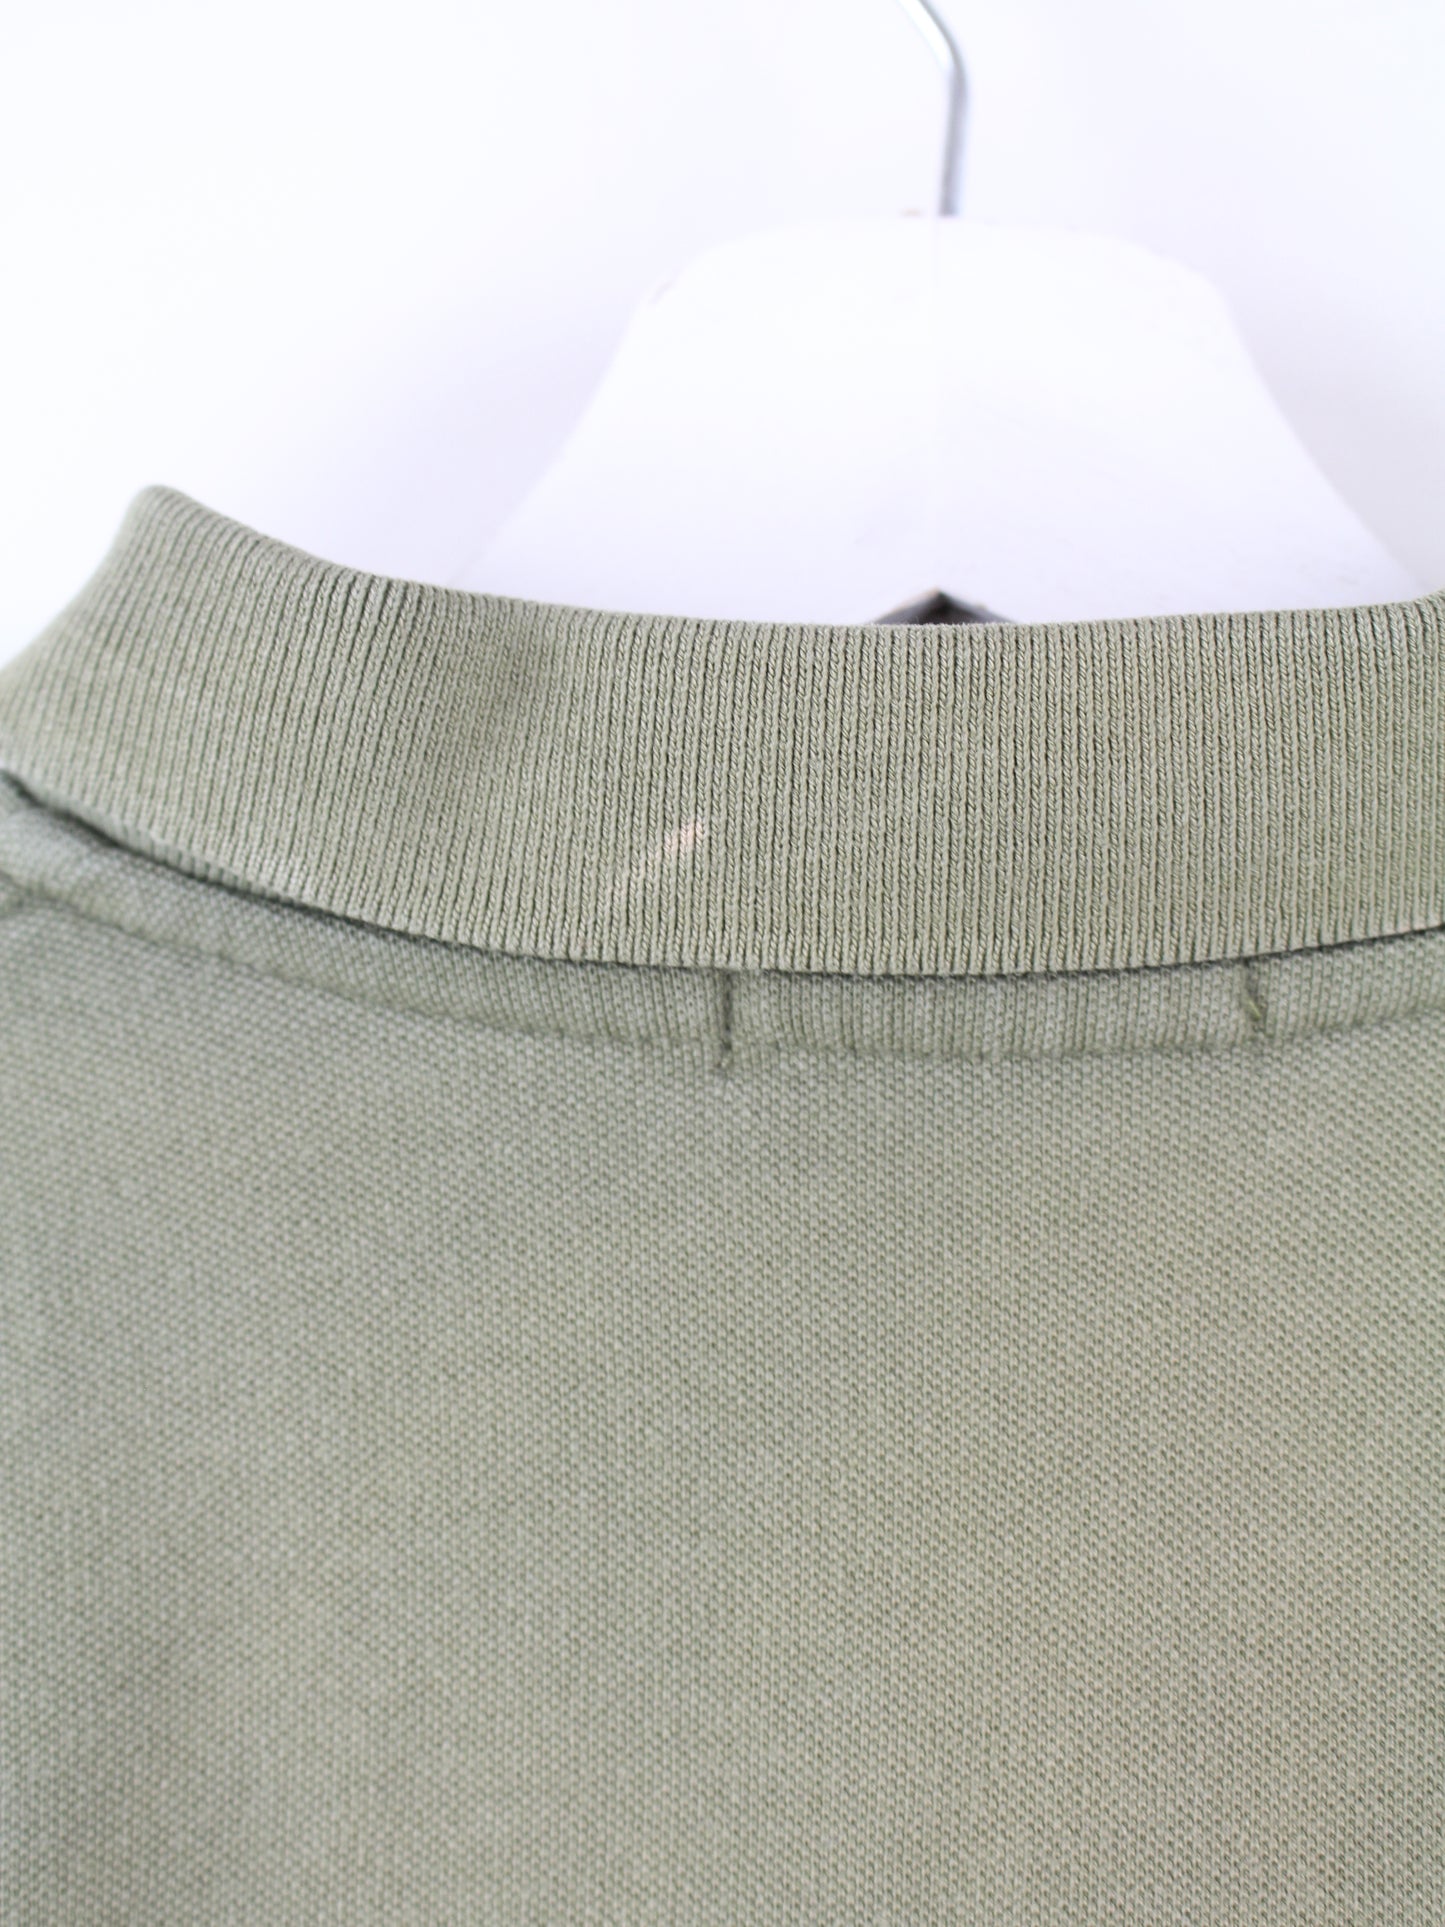 Ralph Lauren Long Sleeve Polo Green XL